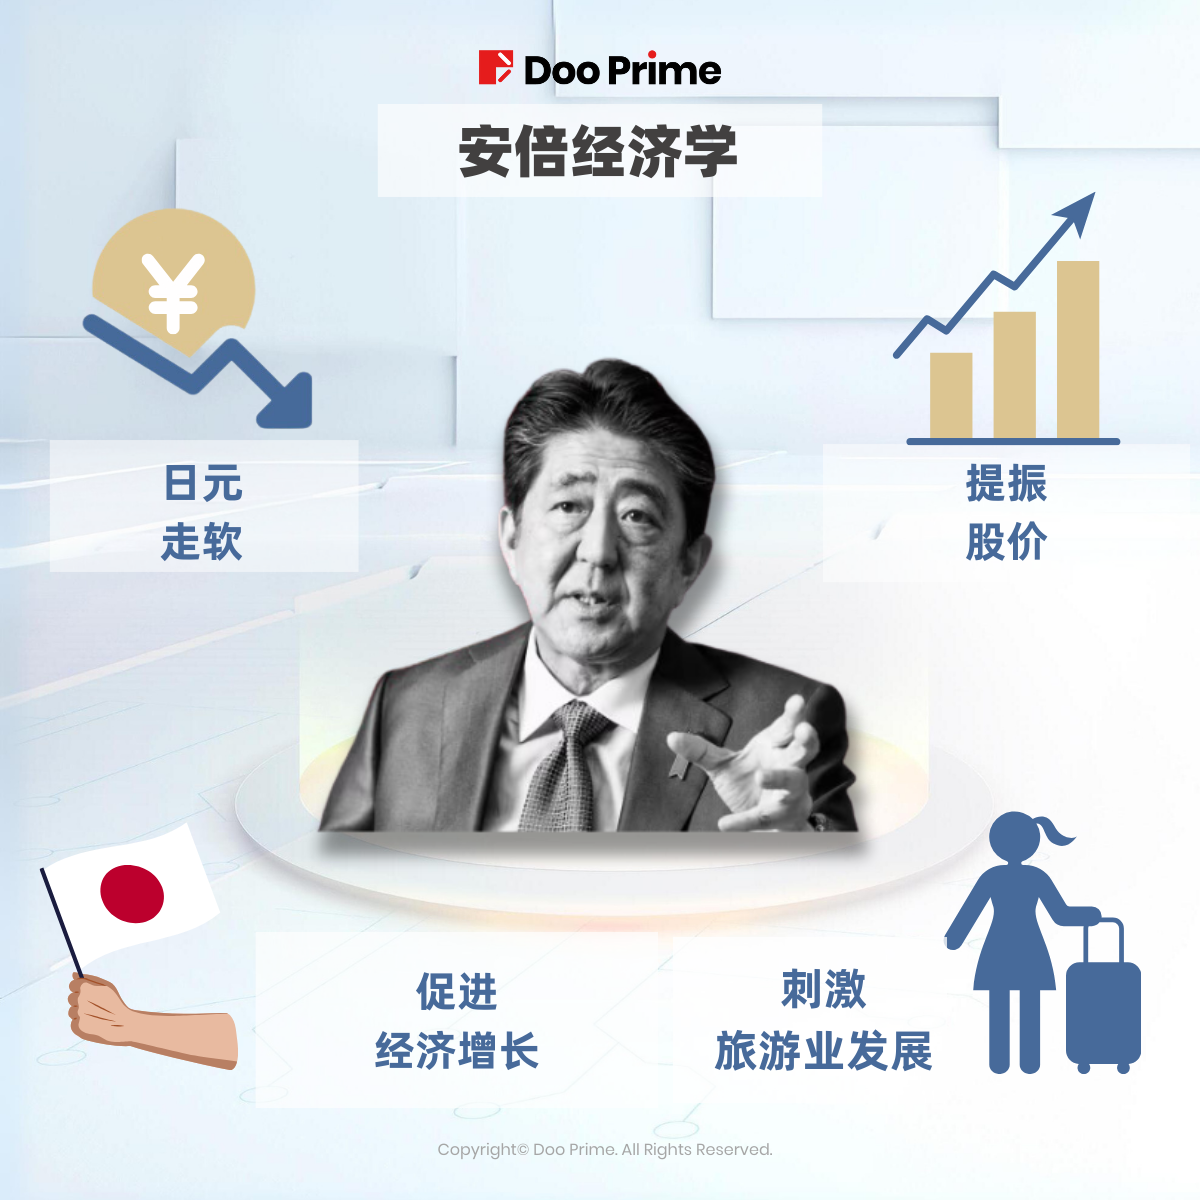 精彩活动 | 季度回顾： Doo Prime 免息活动助力投资者应对日元波动 